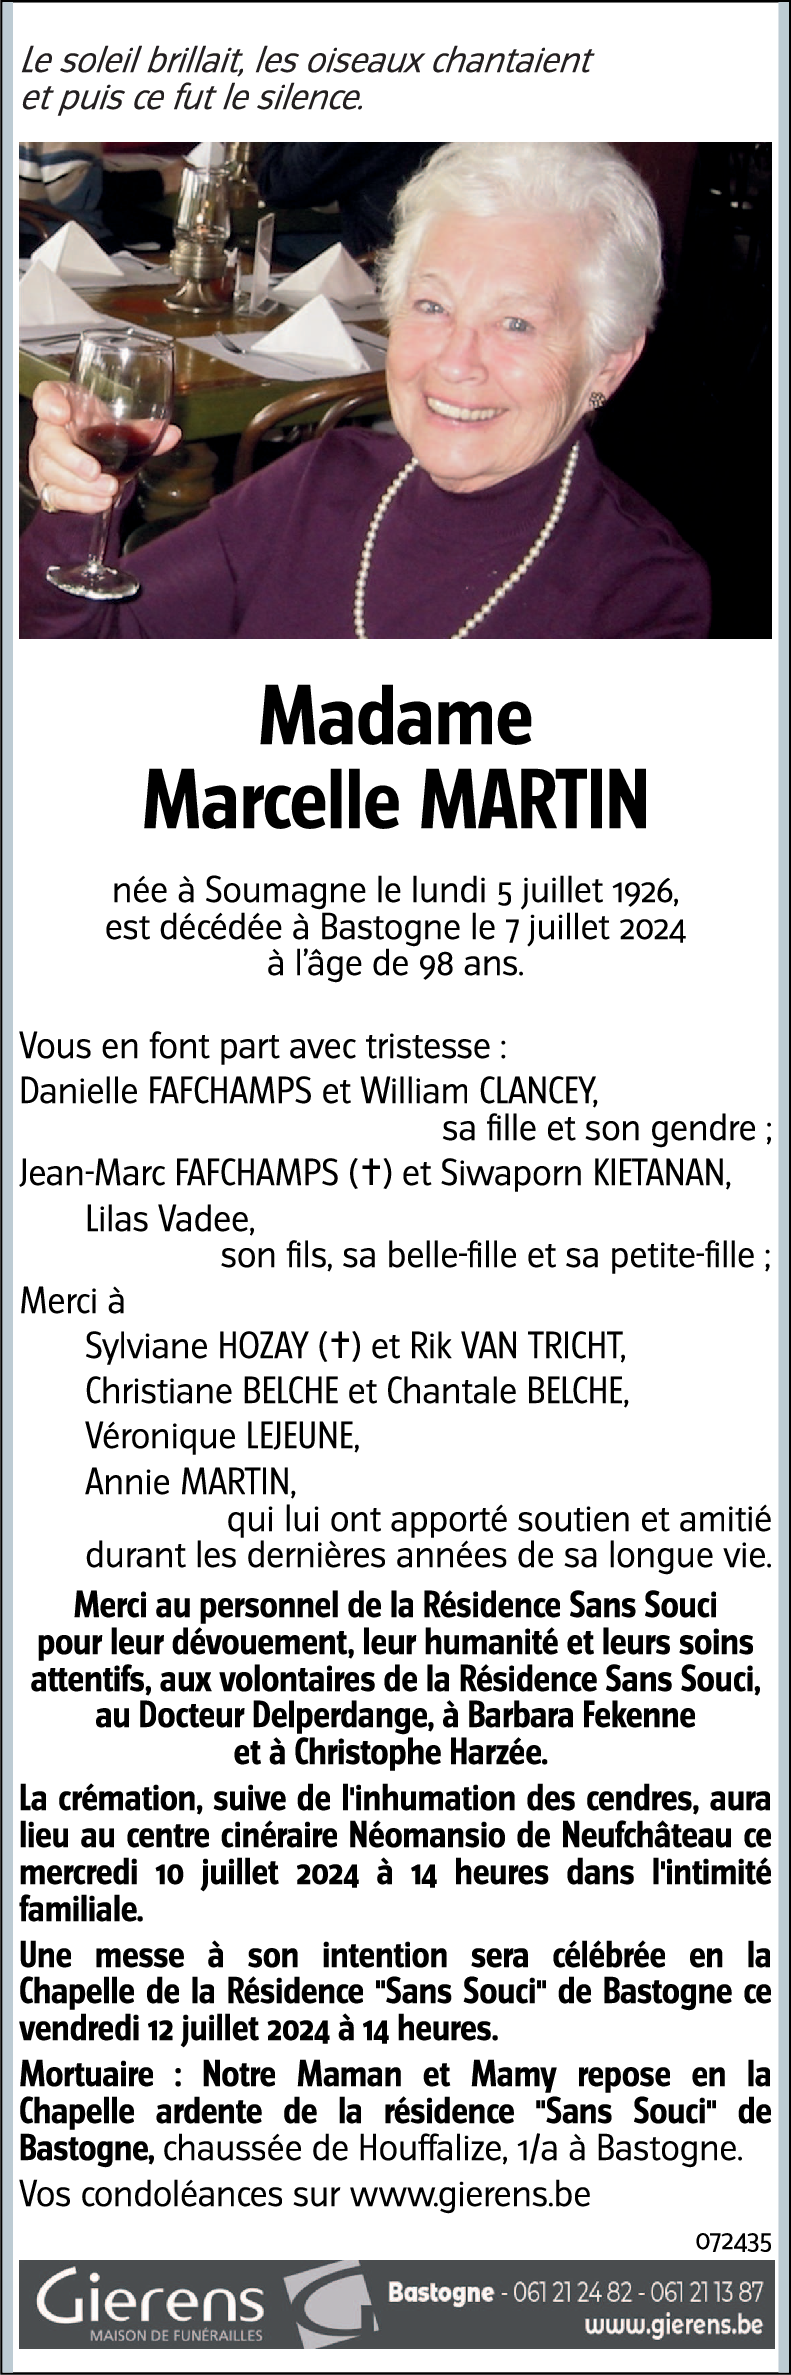 Marcelle MARTIN